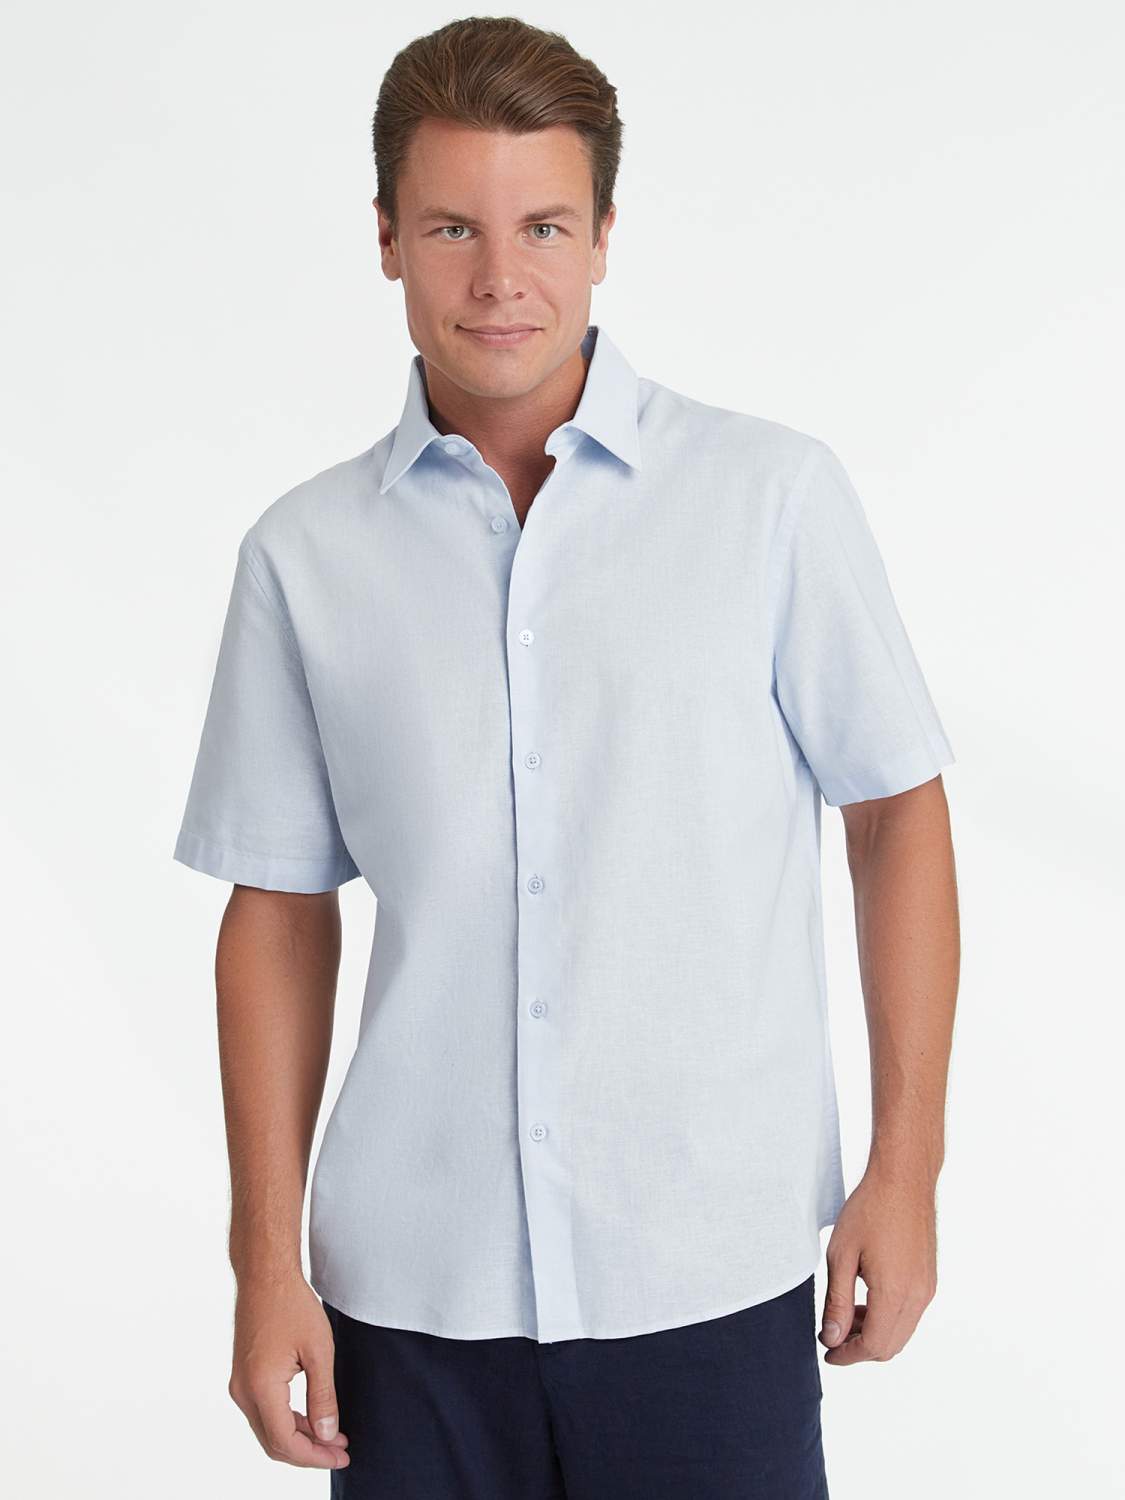 Страница 4 - Рубашки с коротким рукавом мужские - Мегамаркет